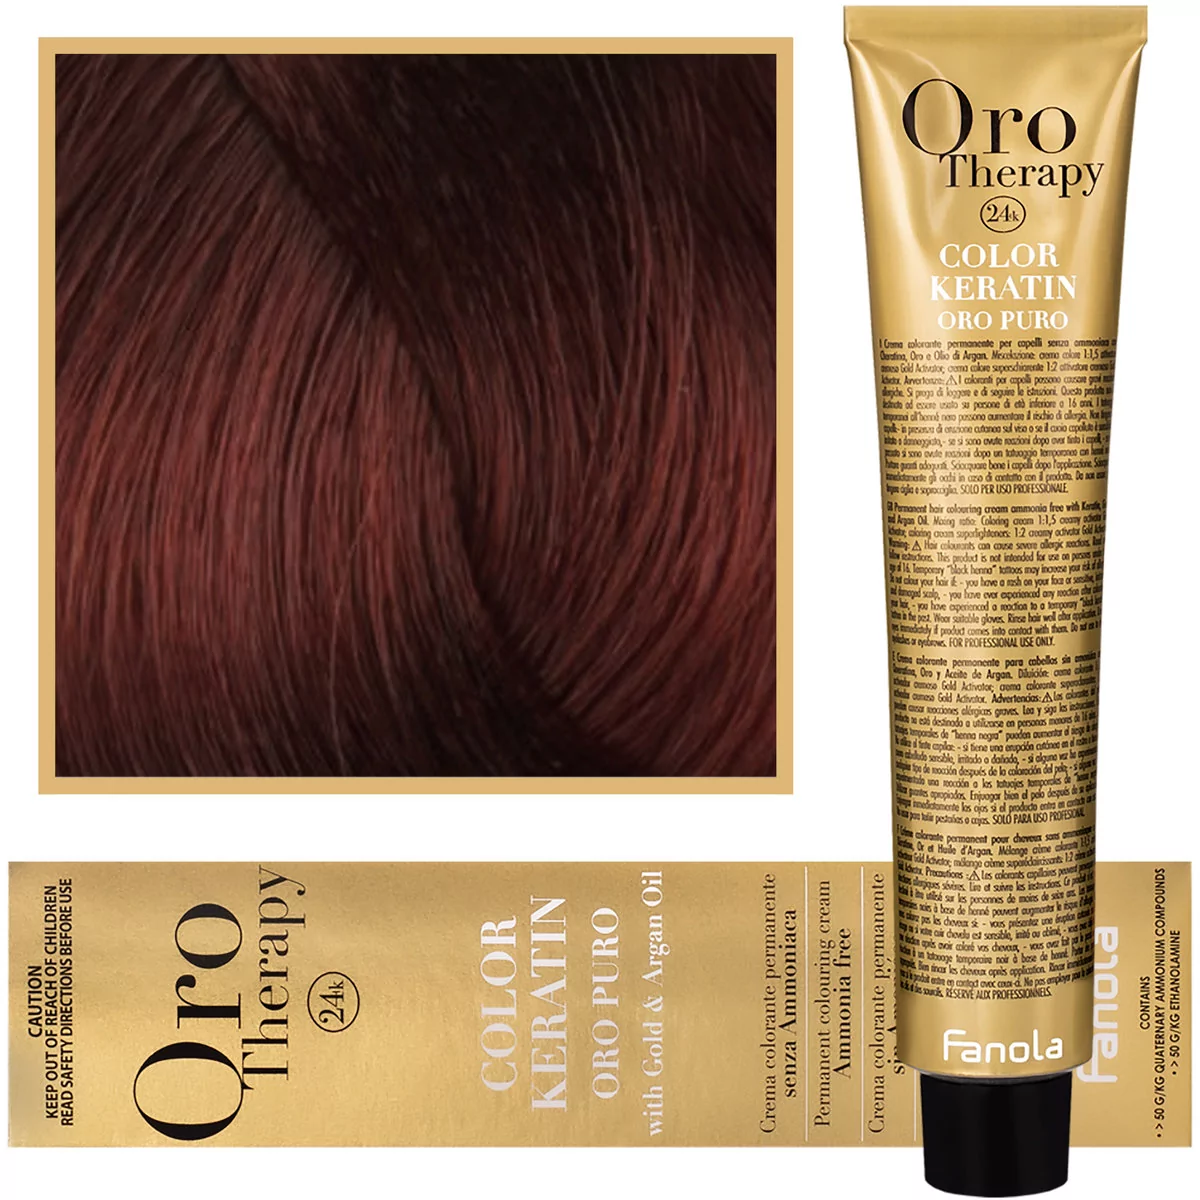 Fanola 6.46 Oro Puro Therapy Keratin Color 100 ML ciemny blond miedzi Czerwony 8032947864515